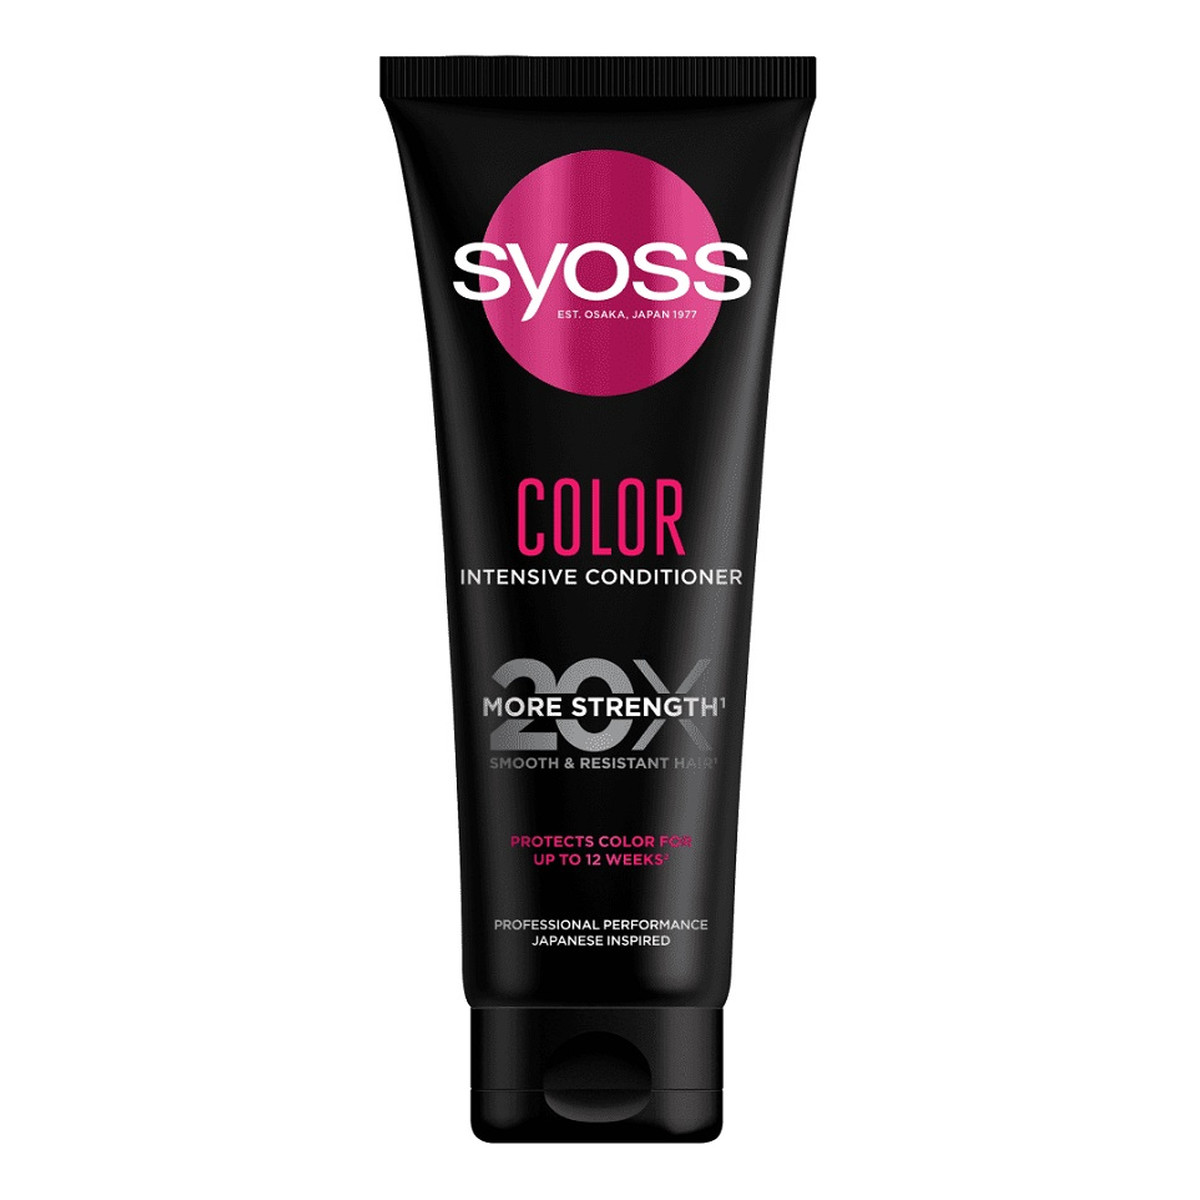 Syoss Color intensive conditioner intensywna odżywka do włosów farbowanych i rozjaśnianych 250ml